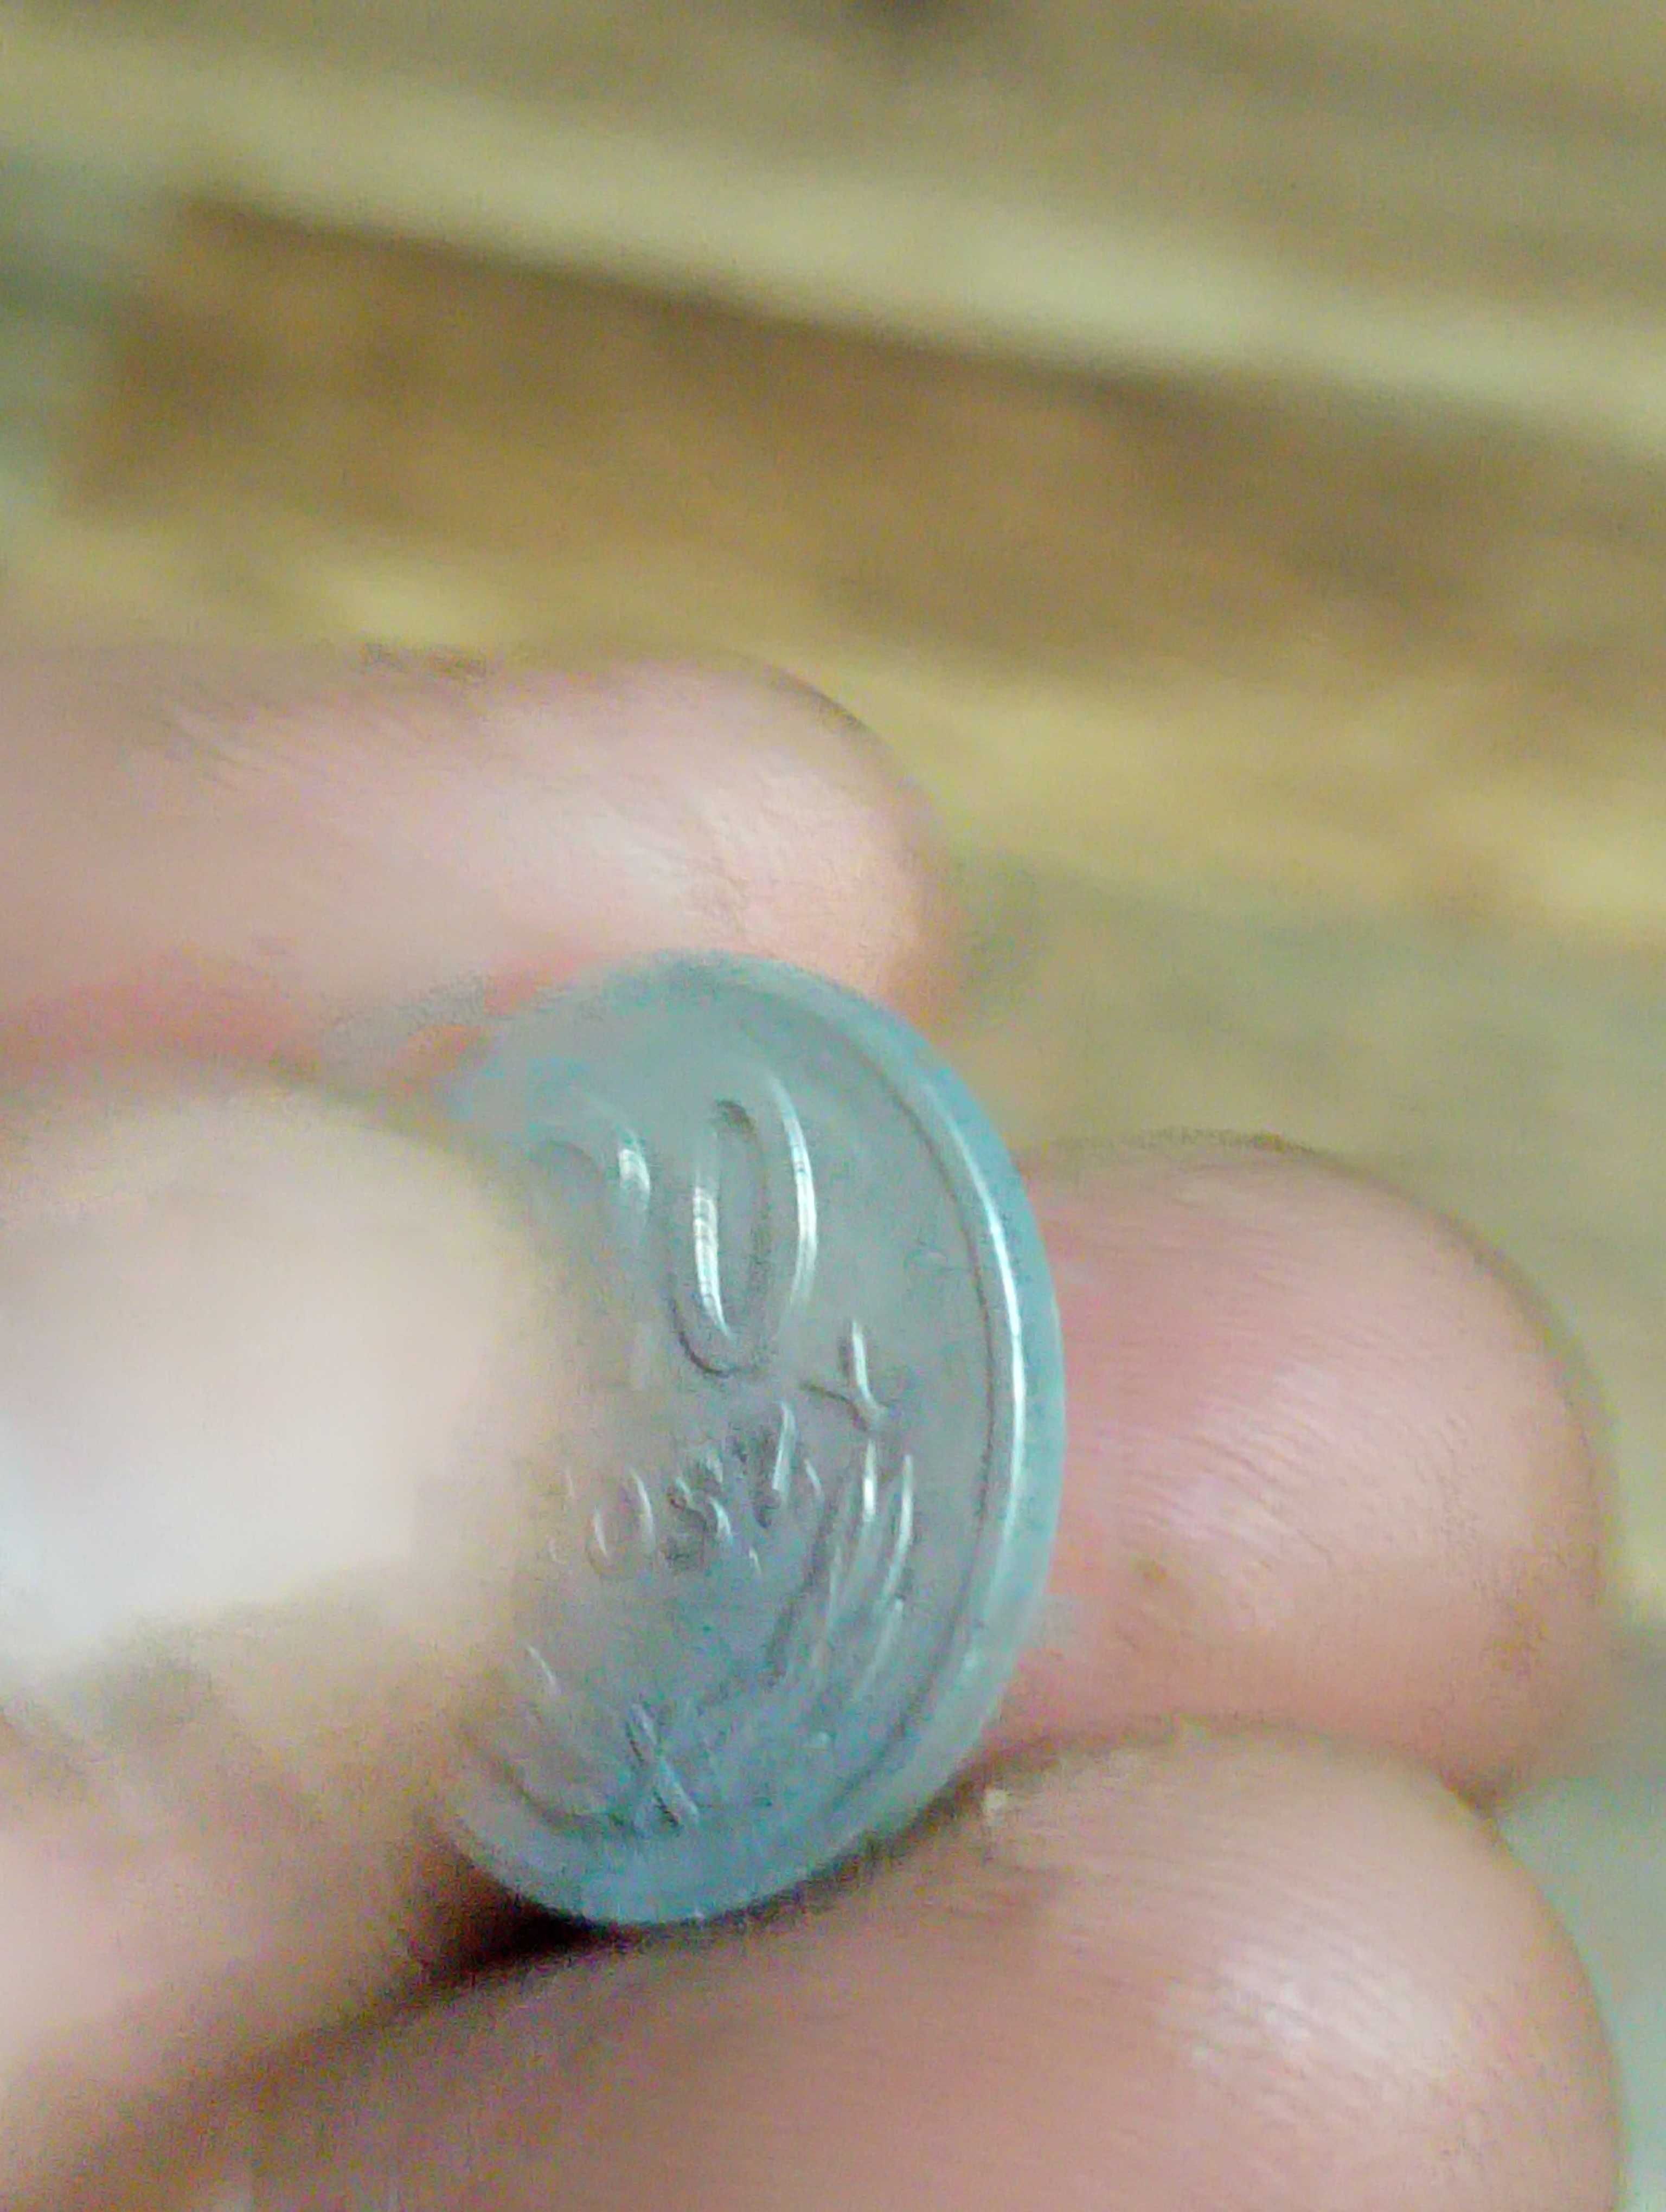 Moneta druga 20 groszy 1973 rok bzm